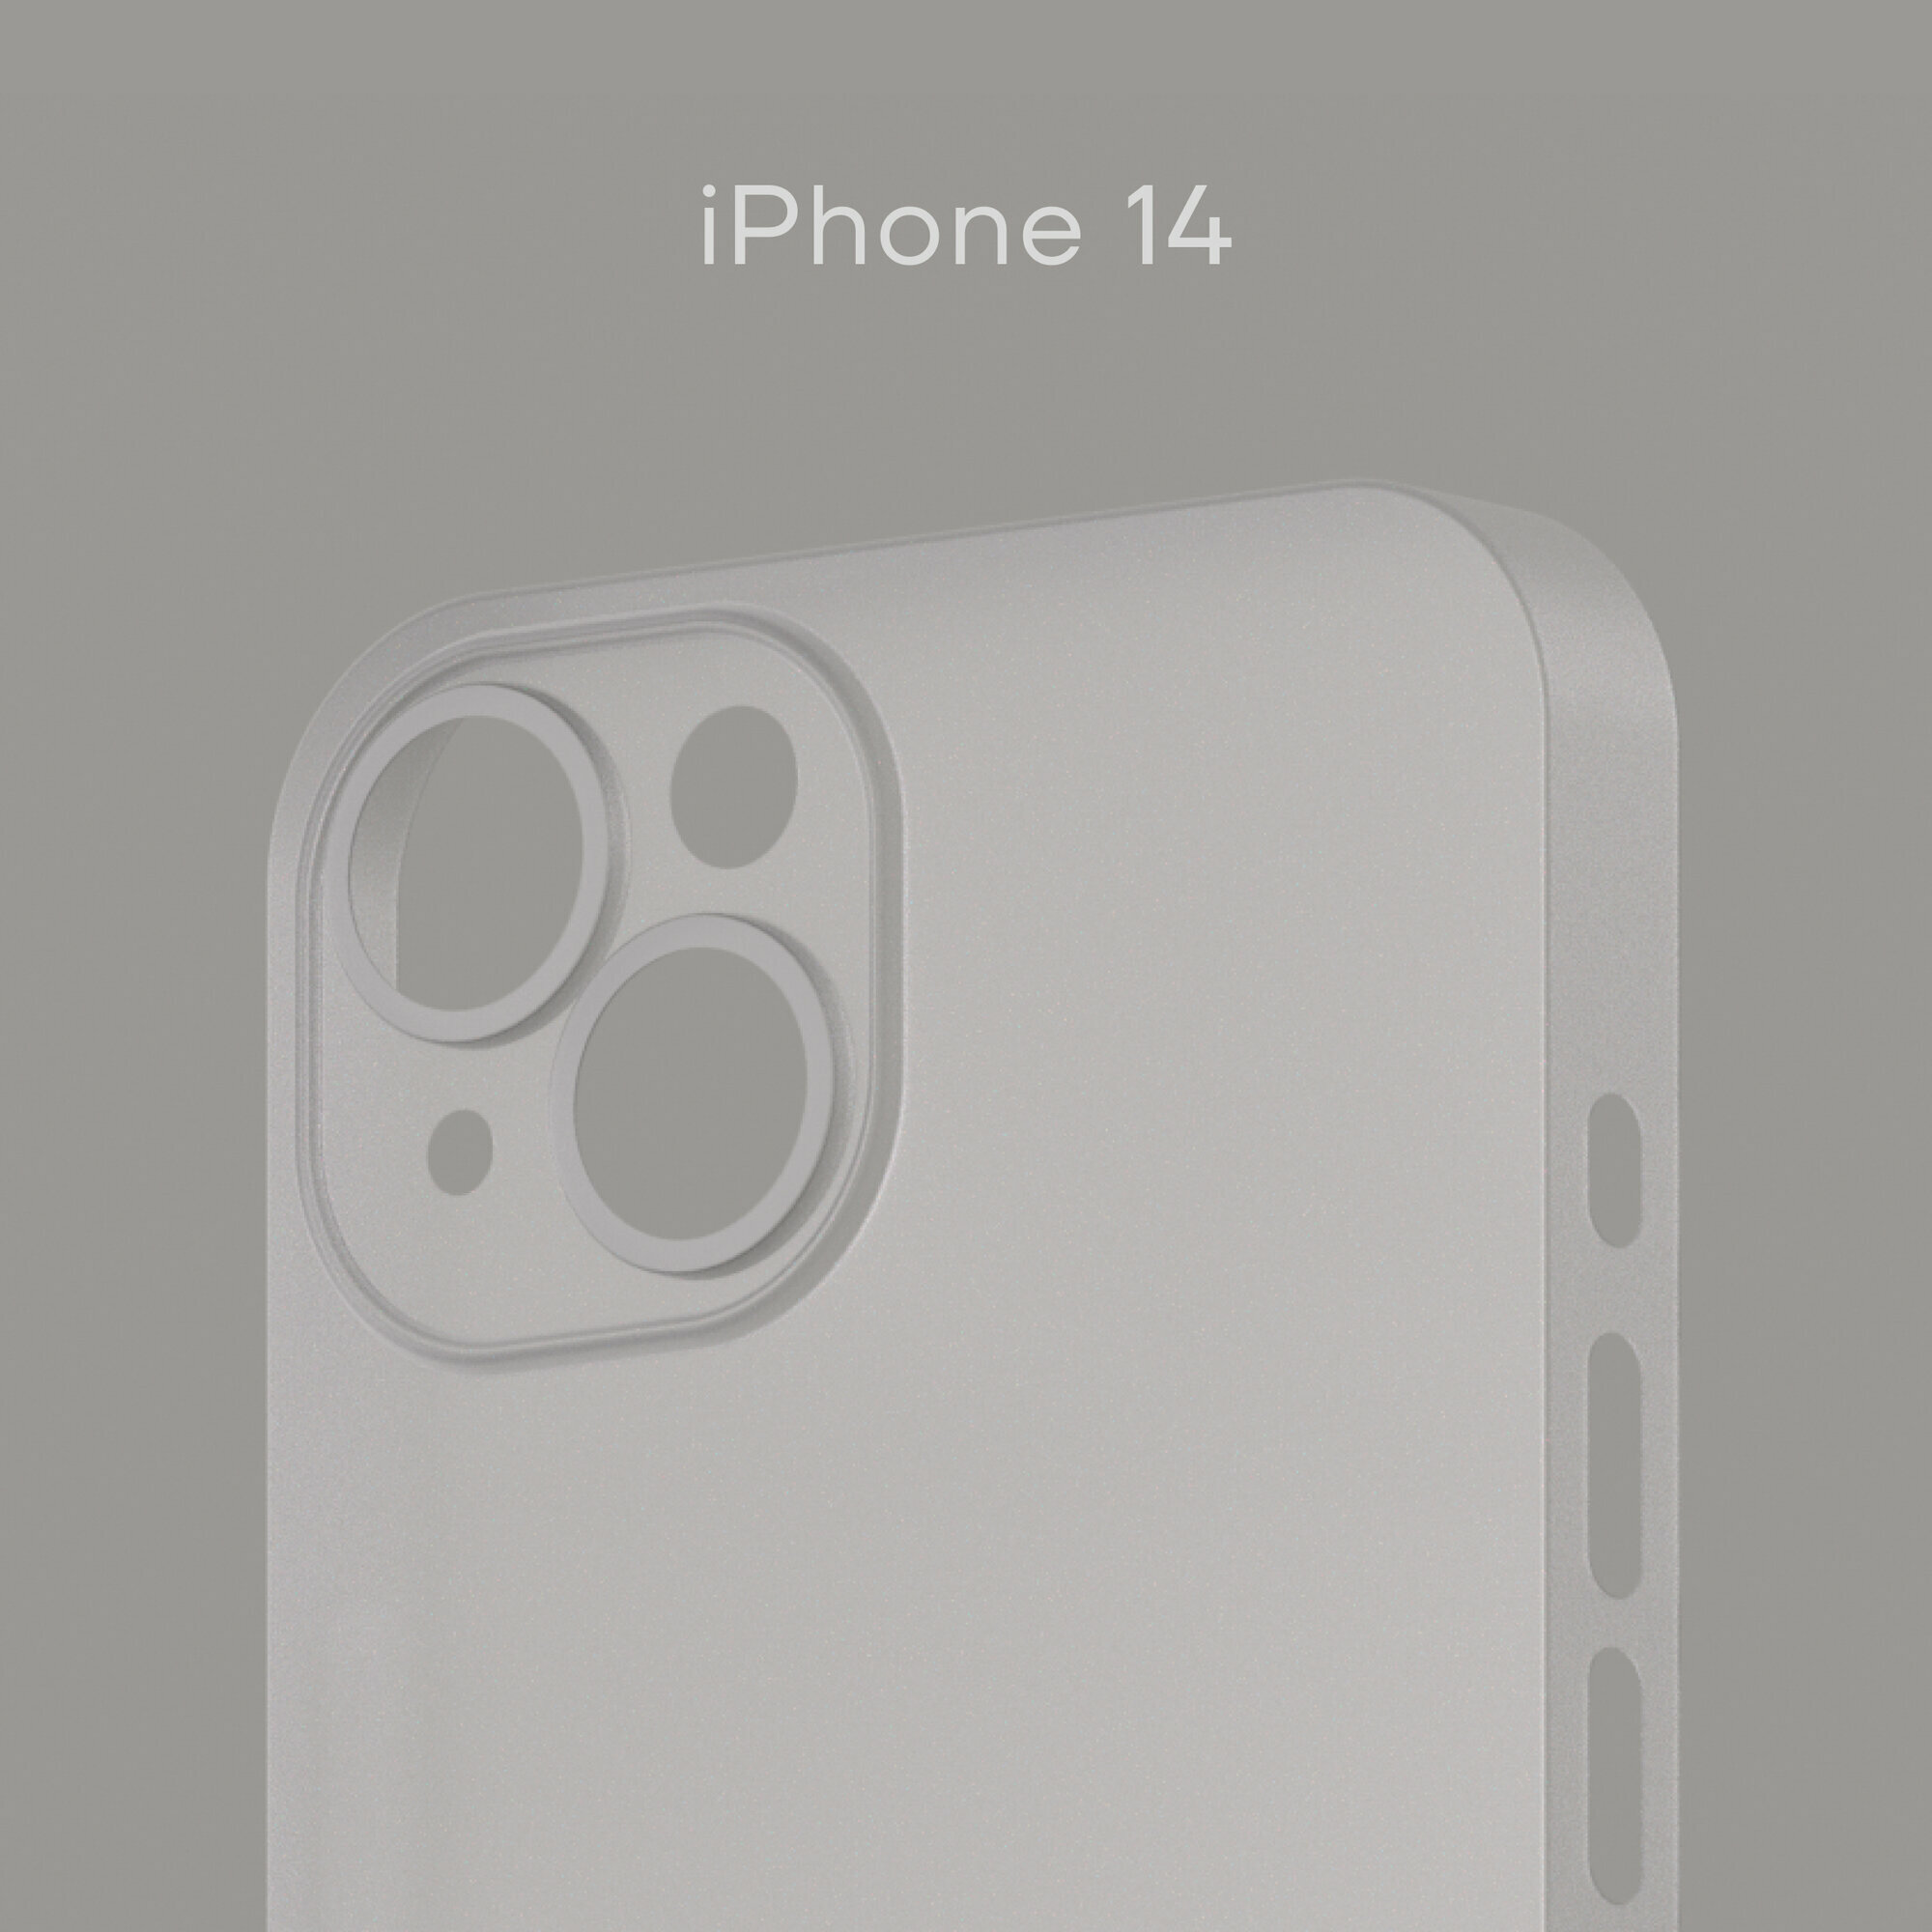 Ультратонкий чехол Уголок Air Case для iPhone 14 толщиной 0,3 мм, белый, матовый, пластиковый